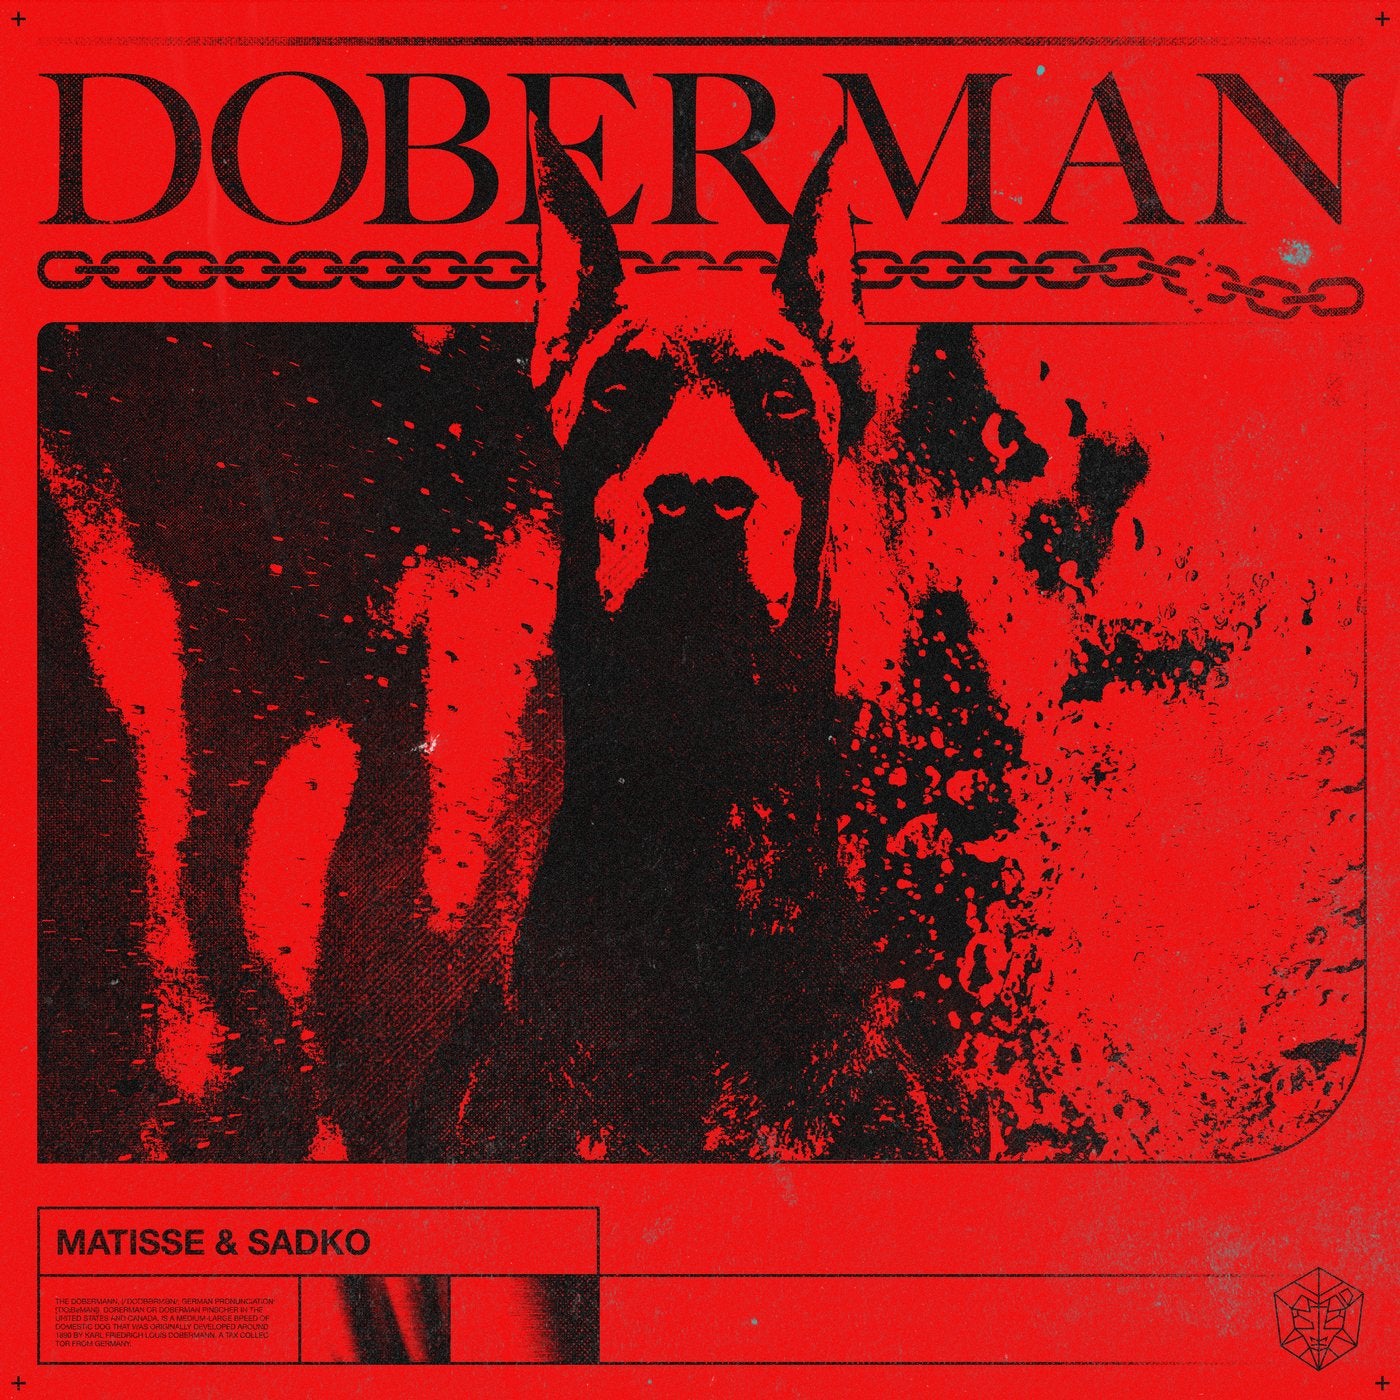 Doberman - Extended Mix